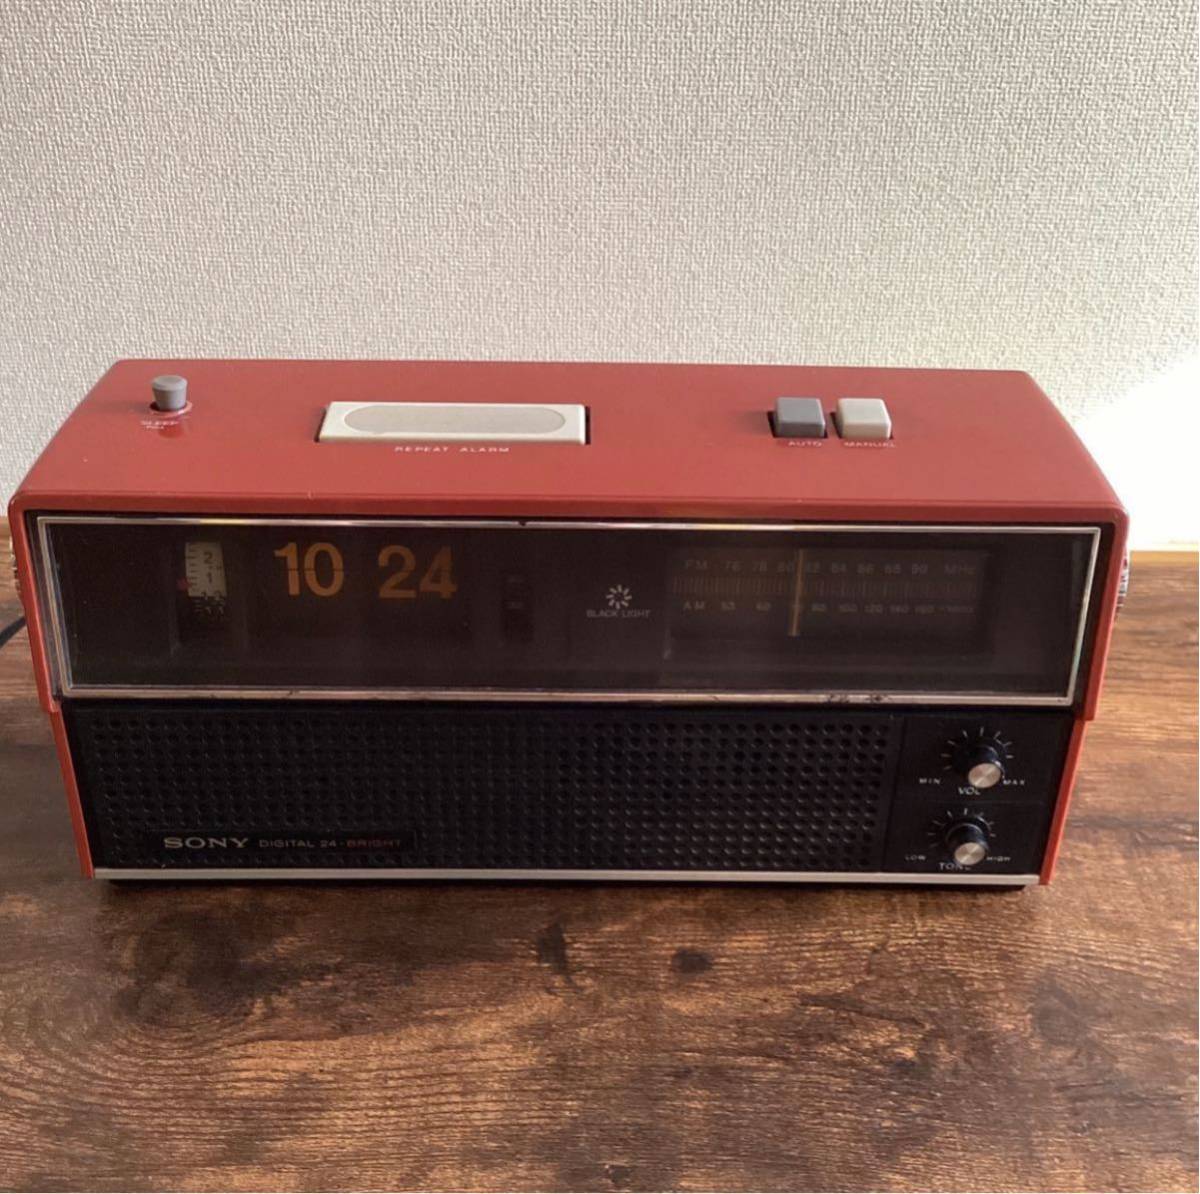 SONY clock radio SONY パタパタ時計 昭和レトロ ラジオ TFM-C400 アンティーク アナログ FM/AM 中古品 当時もの_画像1